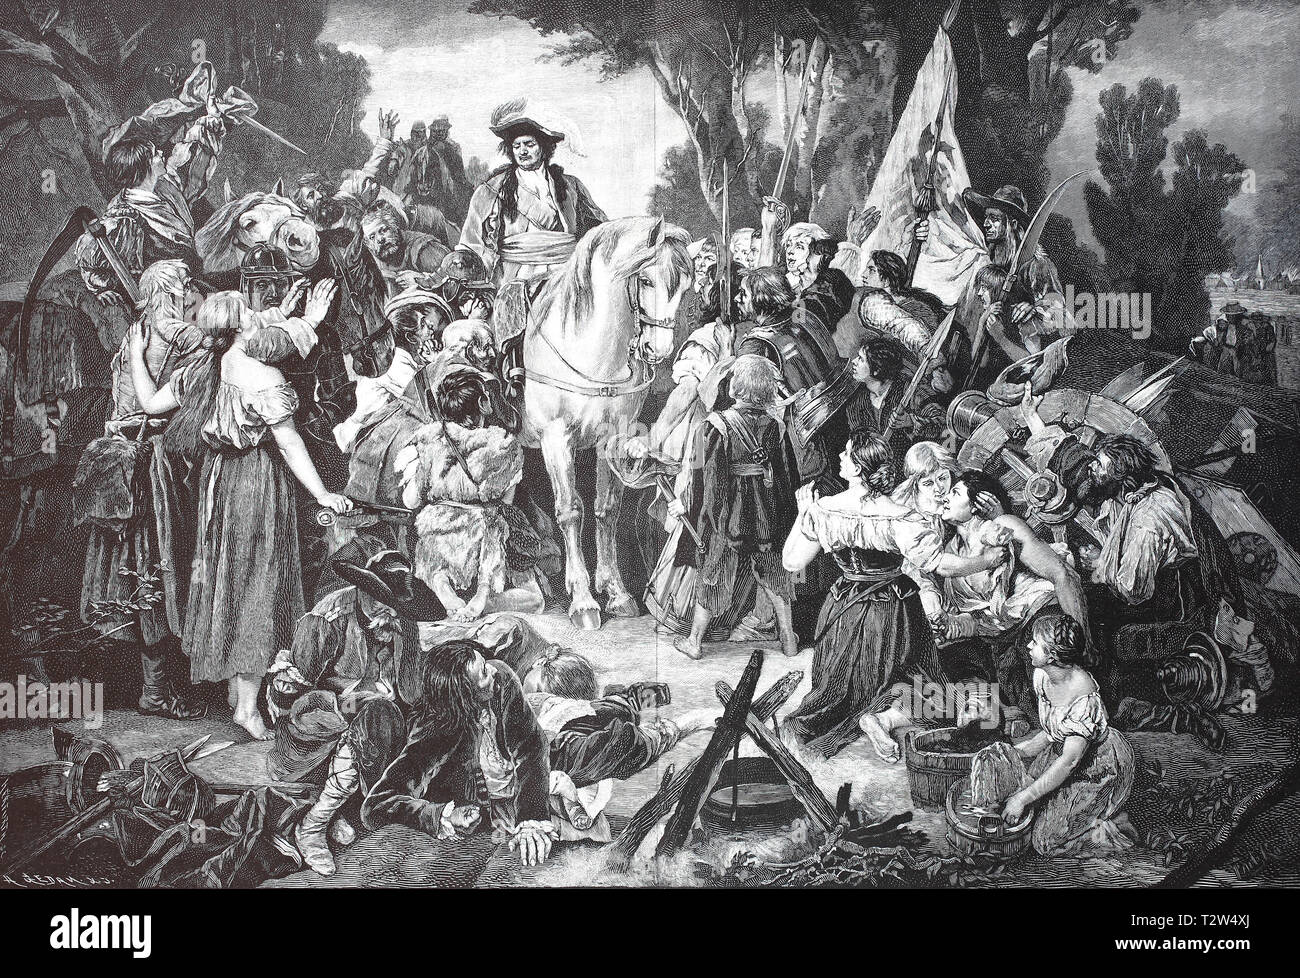 The tallness elector, Friedrich Wilhelm von Brandenburg, in 1620-1688, comforts the rural population after the Swede's war, Der Große Kurfürst, 1620-1688, tröstet das Landvolk nach dem Schwedenkrieg Stock Photo